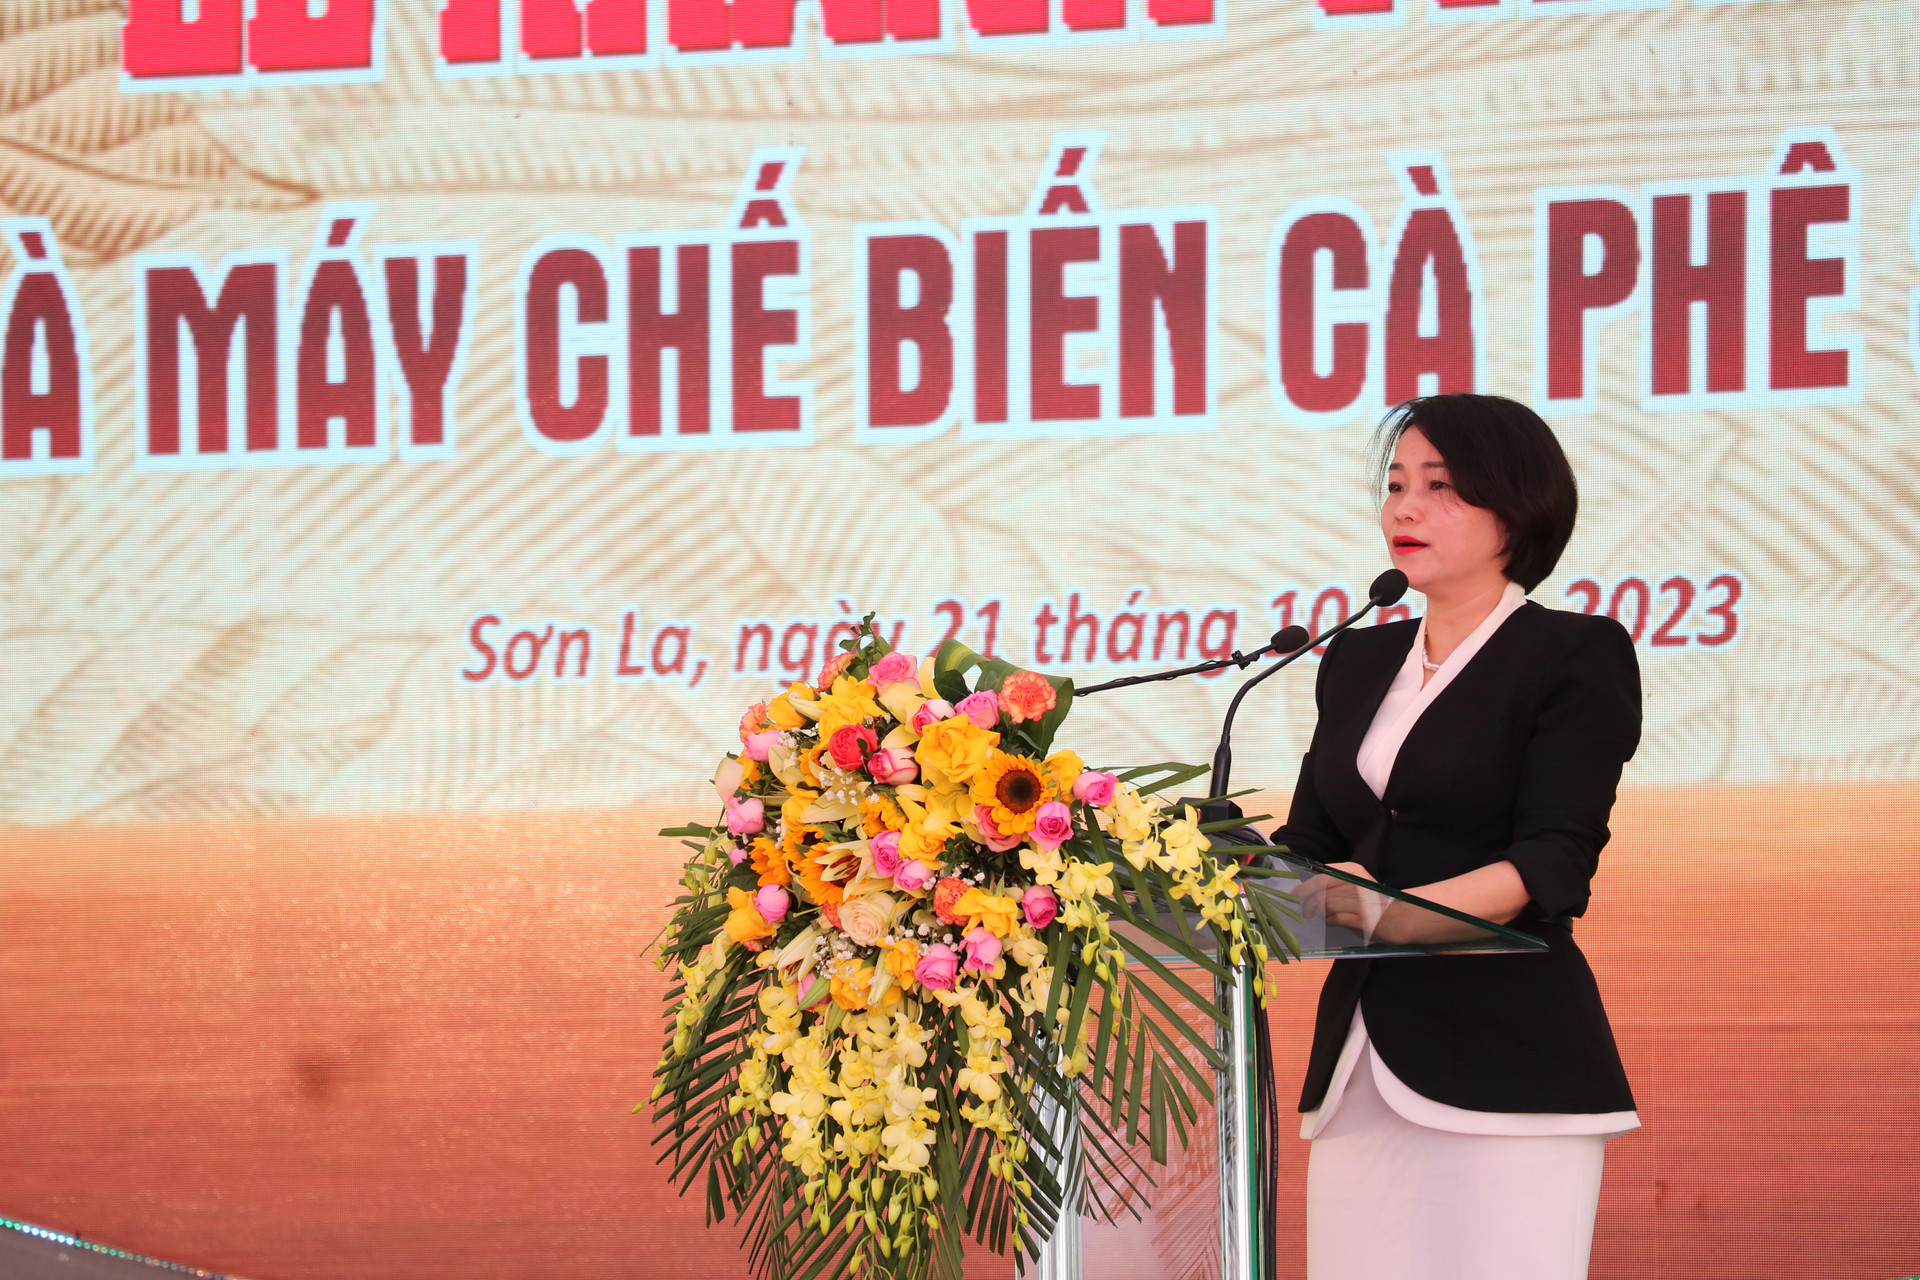 Bà Nguyễn Thị Phương, Tổng Giám đốc WinCommerce phát biểu tại buổi lễ.